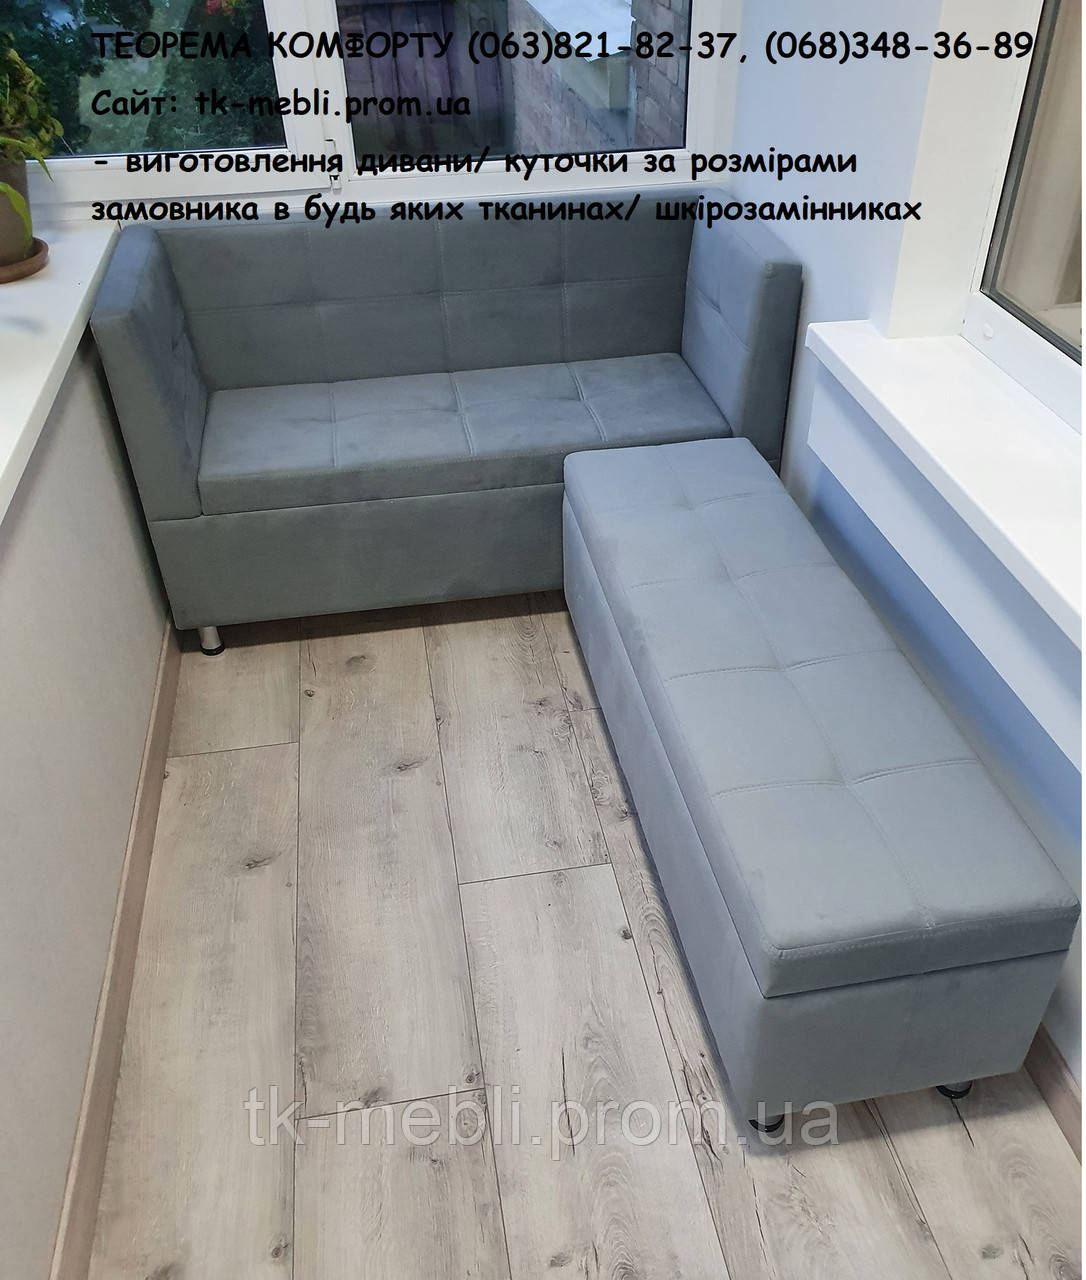 Стильний диван з нішею Томас L (кухня, передпокійй, балкон, лоджія) виготевлення за розмірами замовника